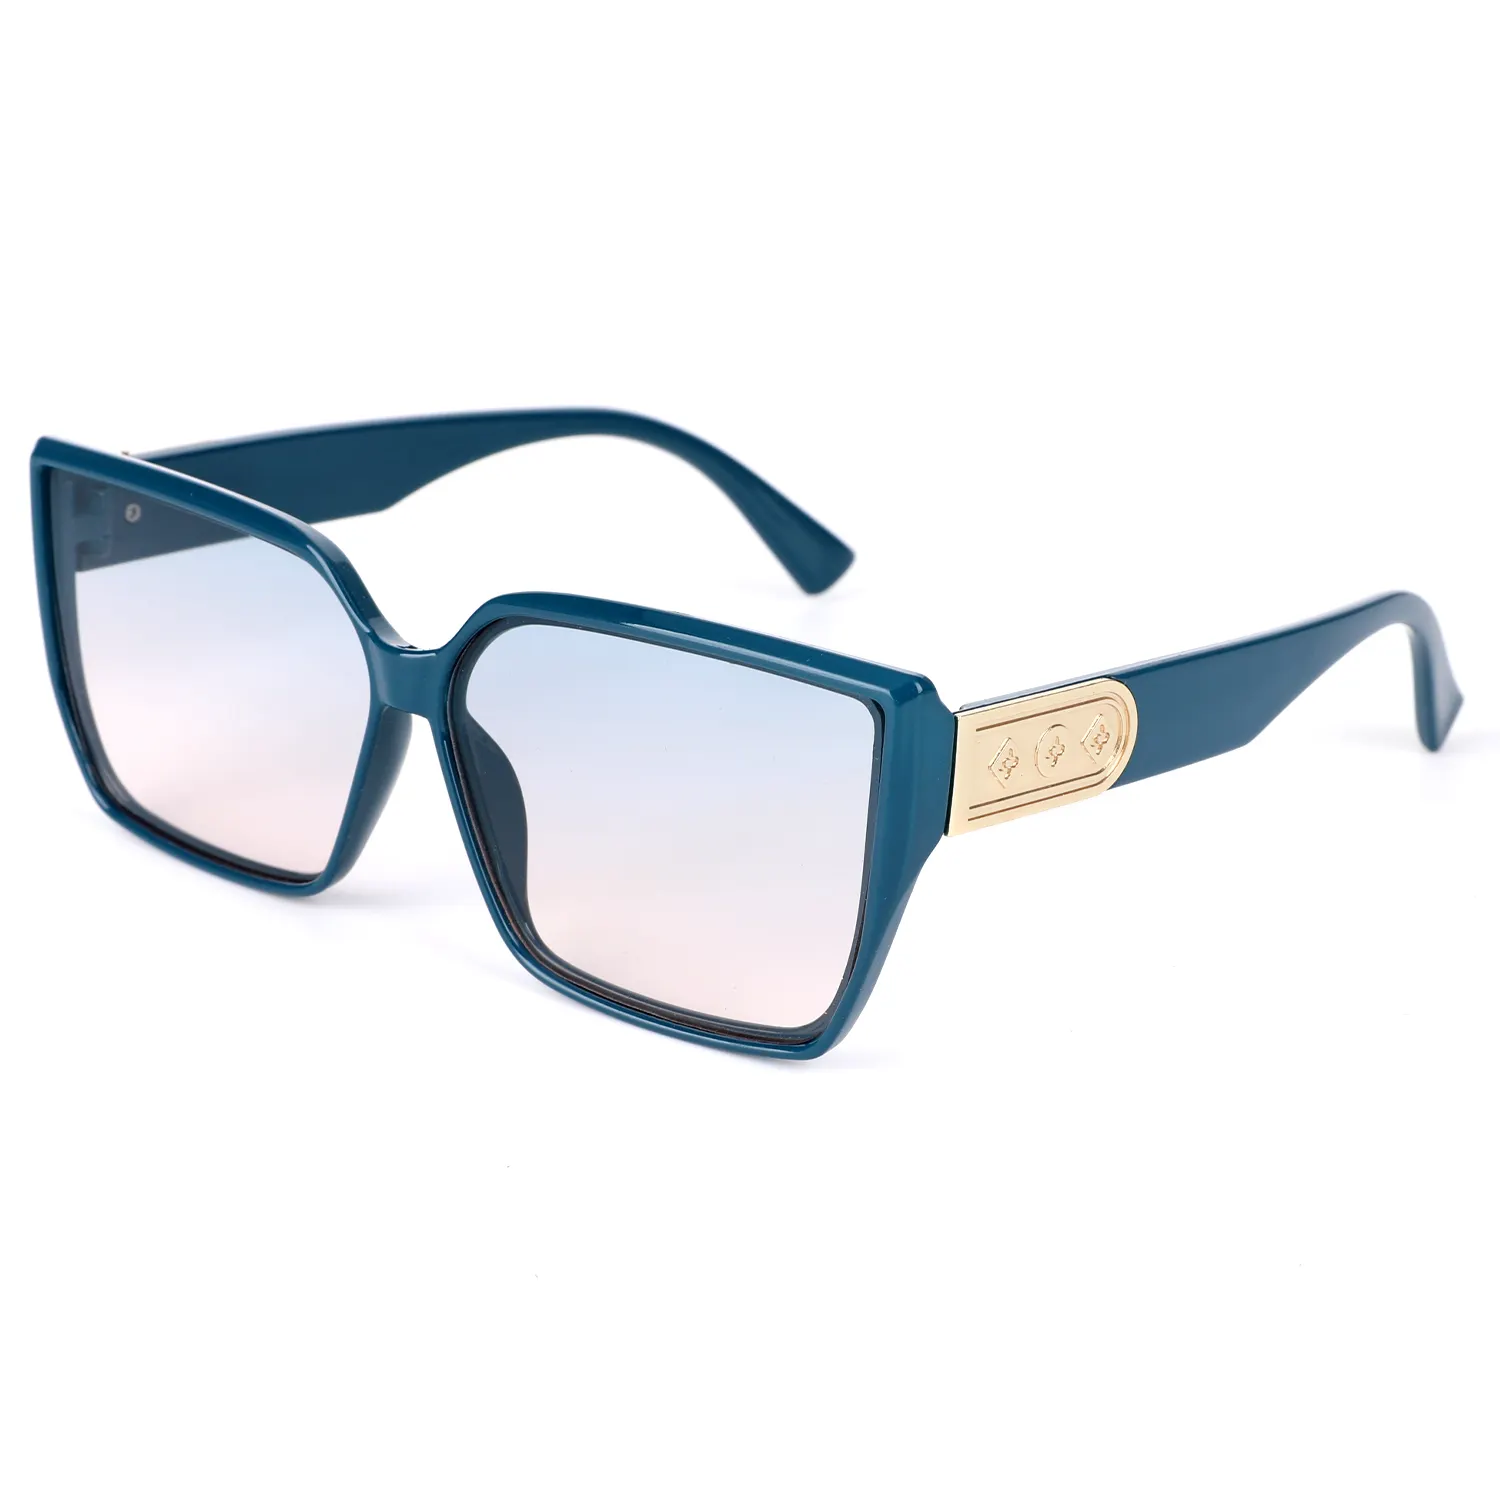 새로운 스퀘어 프레임 패션 선글라스 네트워크 레드 버스트 안경 스트리트 샷 UV 보호 야외 대형 프레임 선글라스 도매